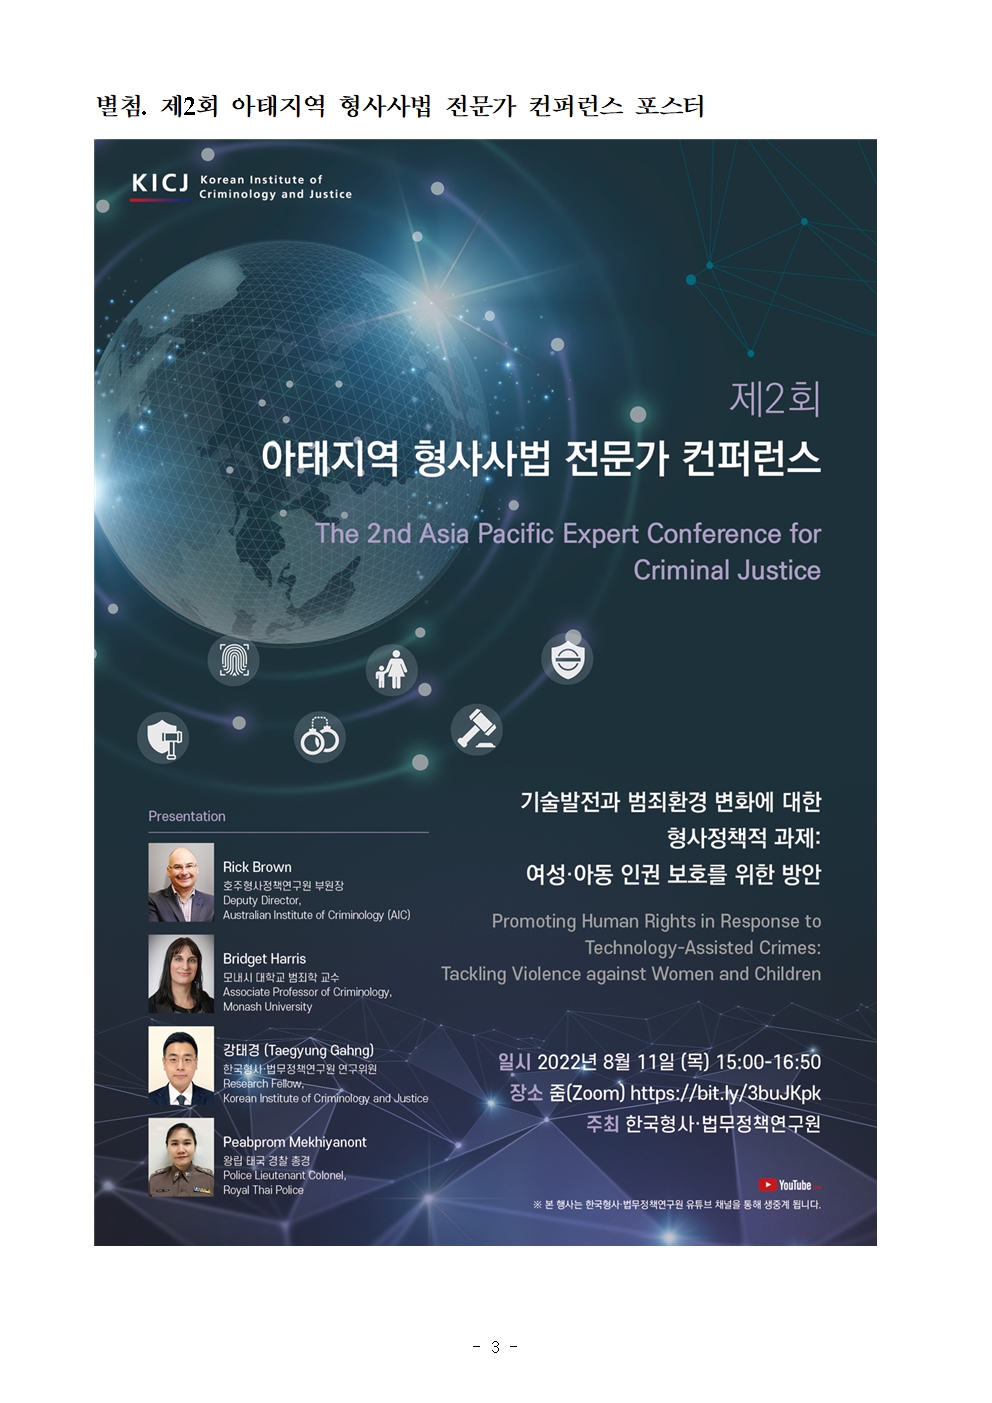 한국형사·법무정책연구원 제2회 아태지역 형사사법 전문가 컨퍼런스 개최 포스터 자세한 내용은 하단 pdf파일 참조